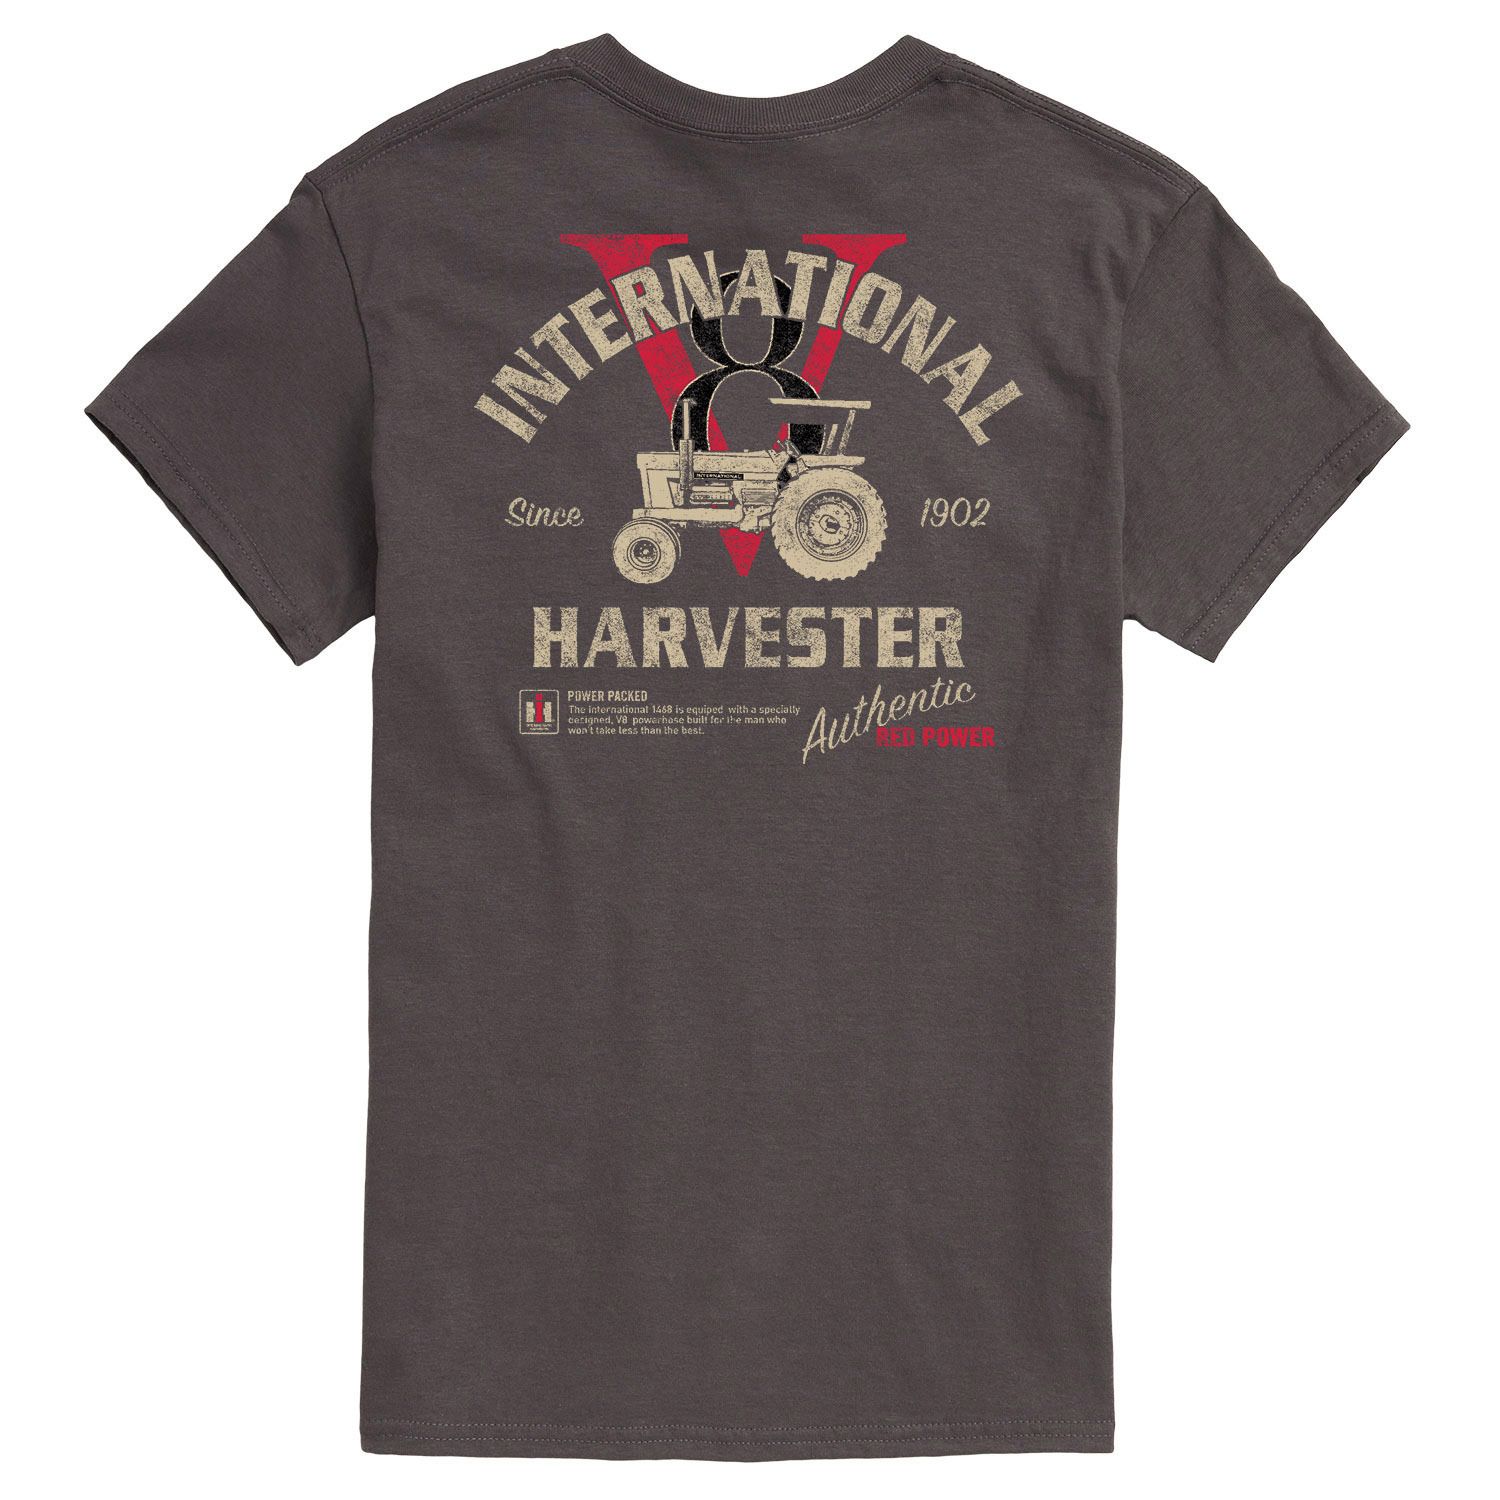 Мужская футболка Case IH Harvester Licensed Character